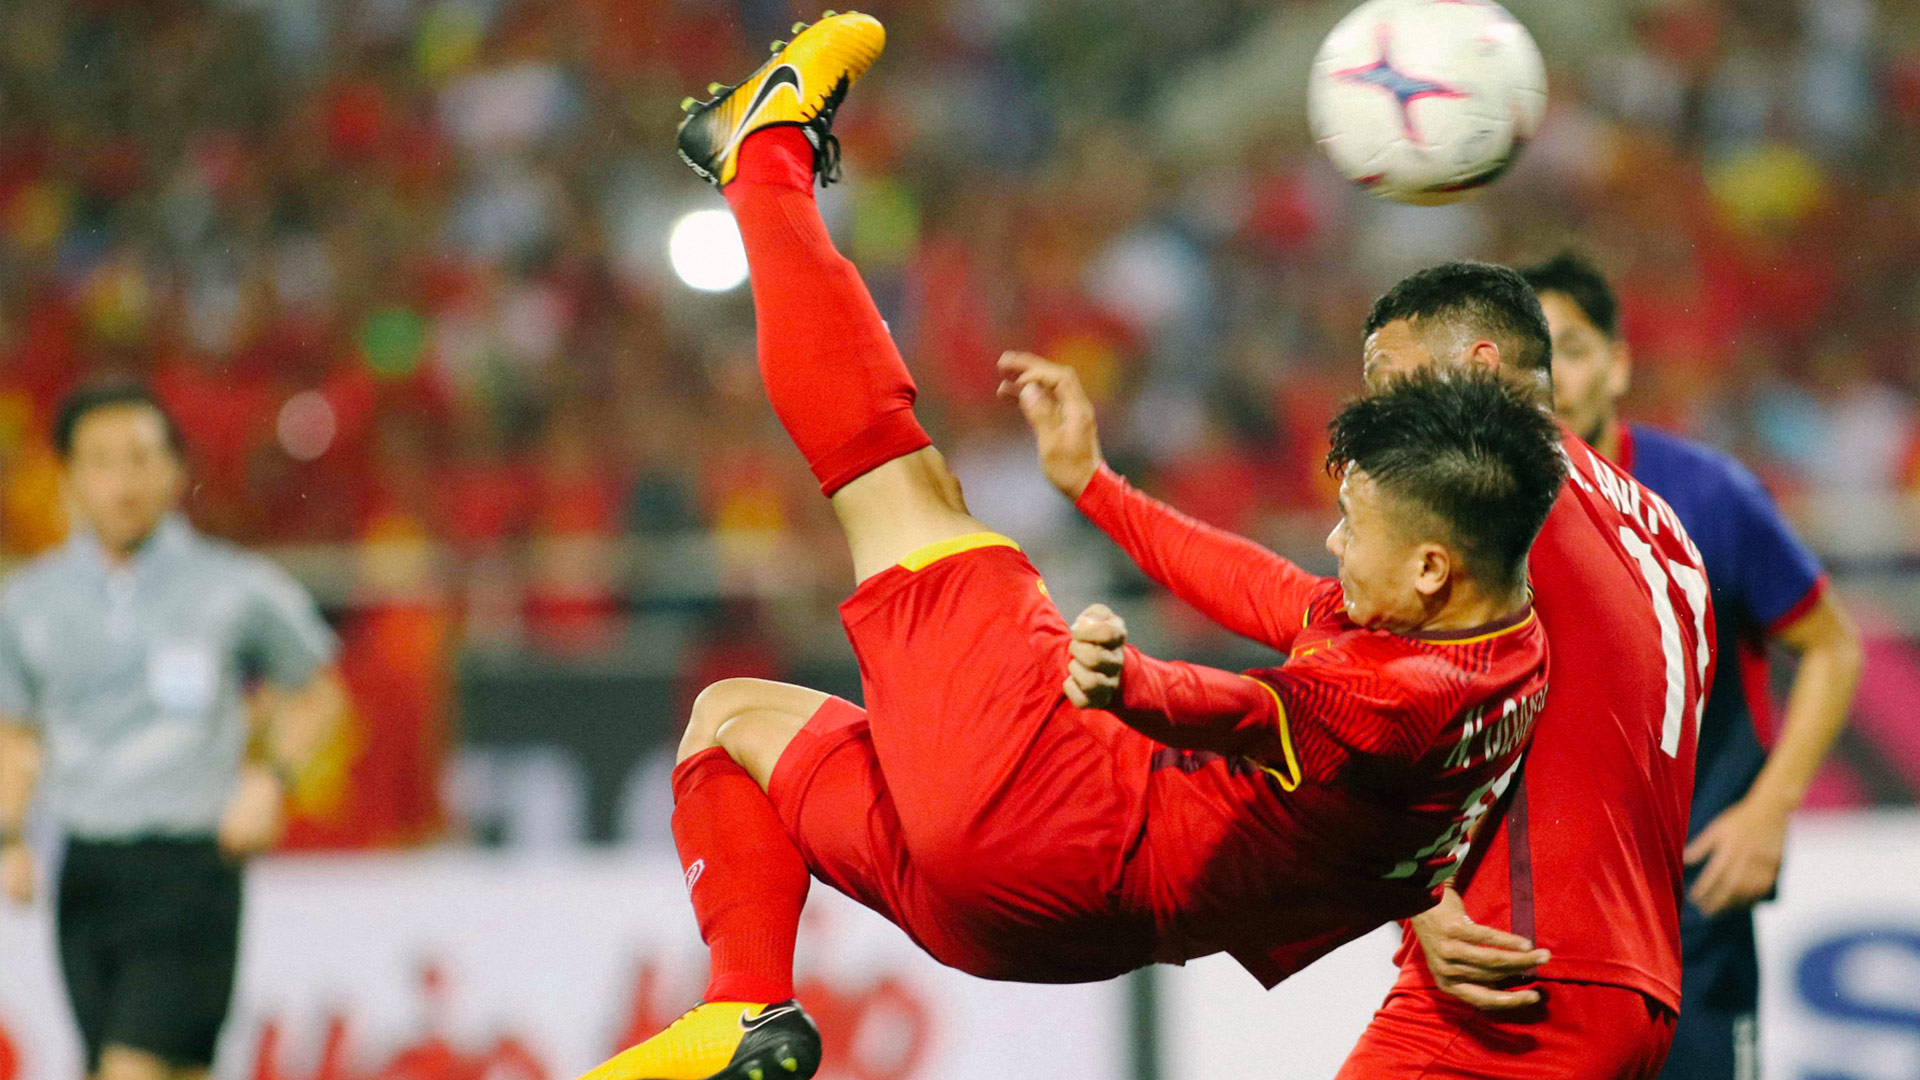 Quang Hải – Ngôi sao trẻ & 2 khoảnh khắc kỳ diệu bóng đá Việt Nam - 8